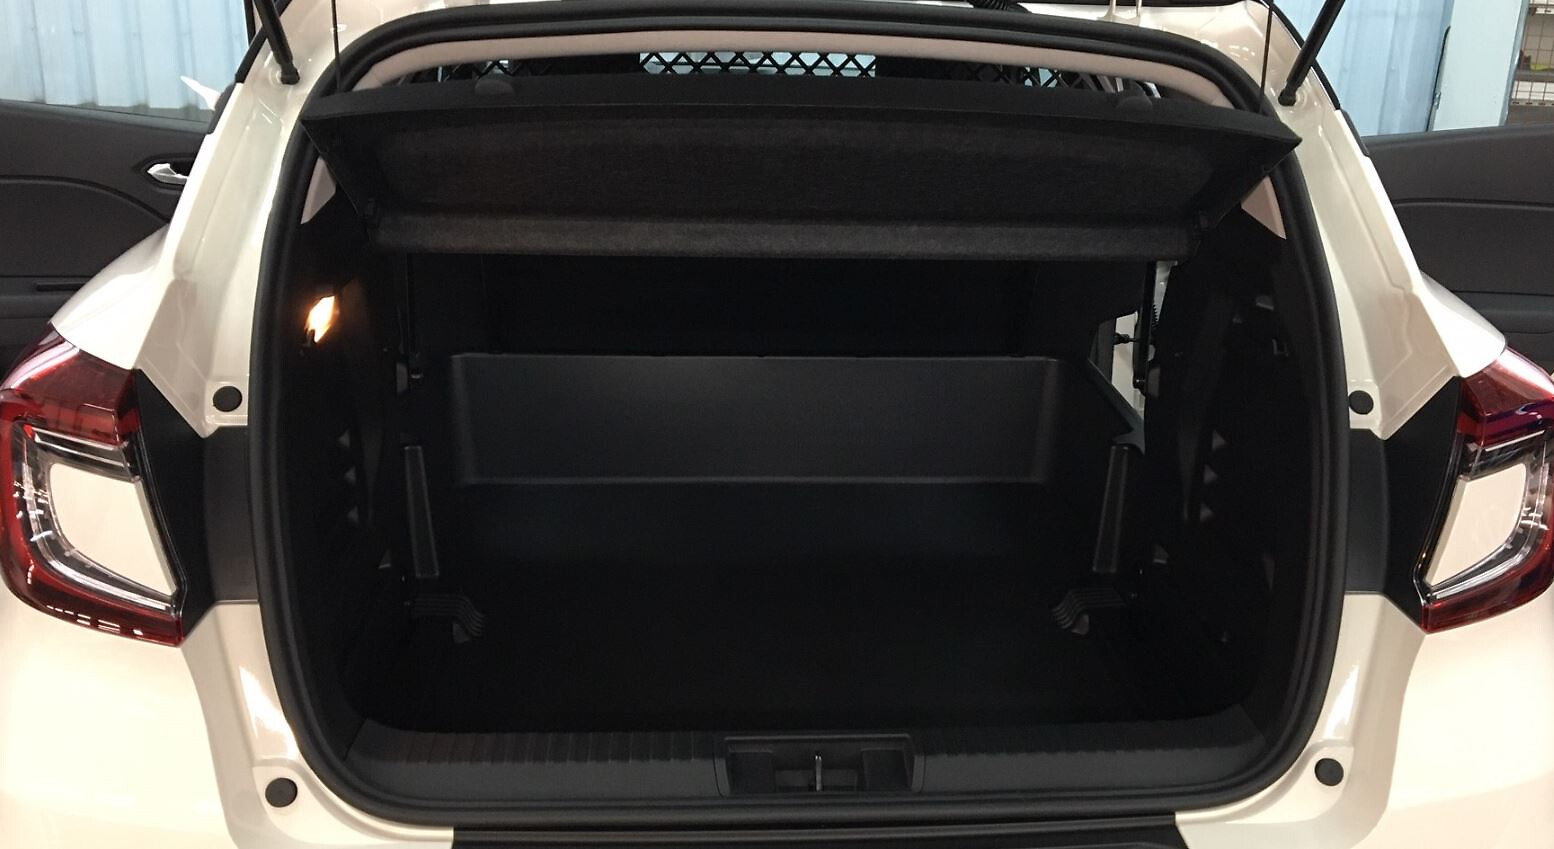 Cache-bagages pour aménagement en véhicule de société